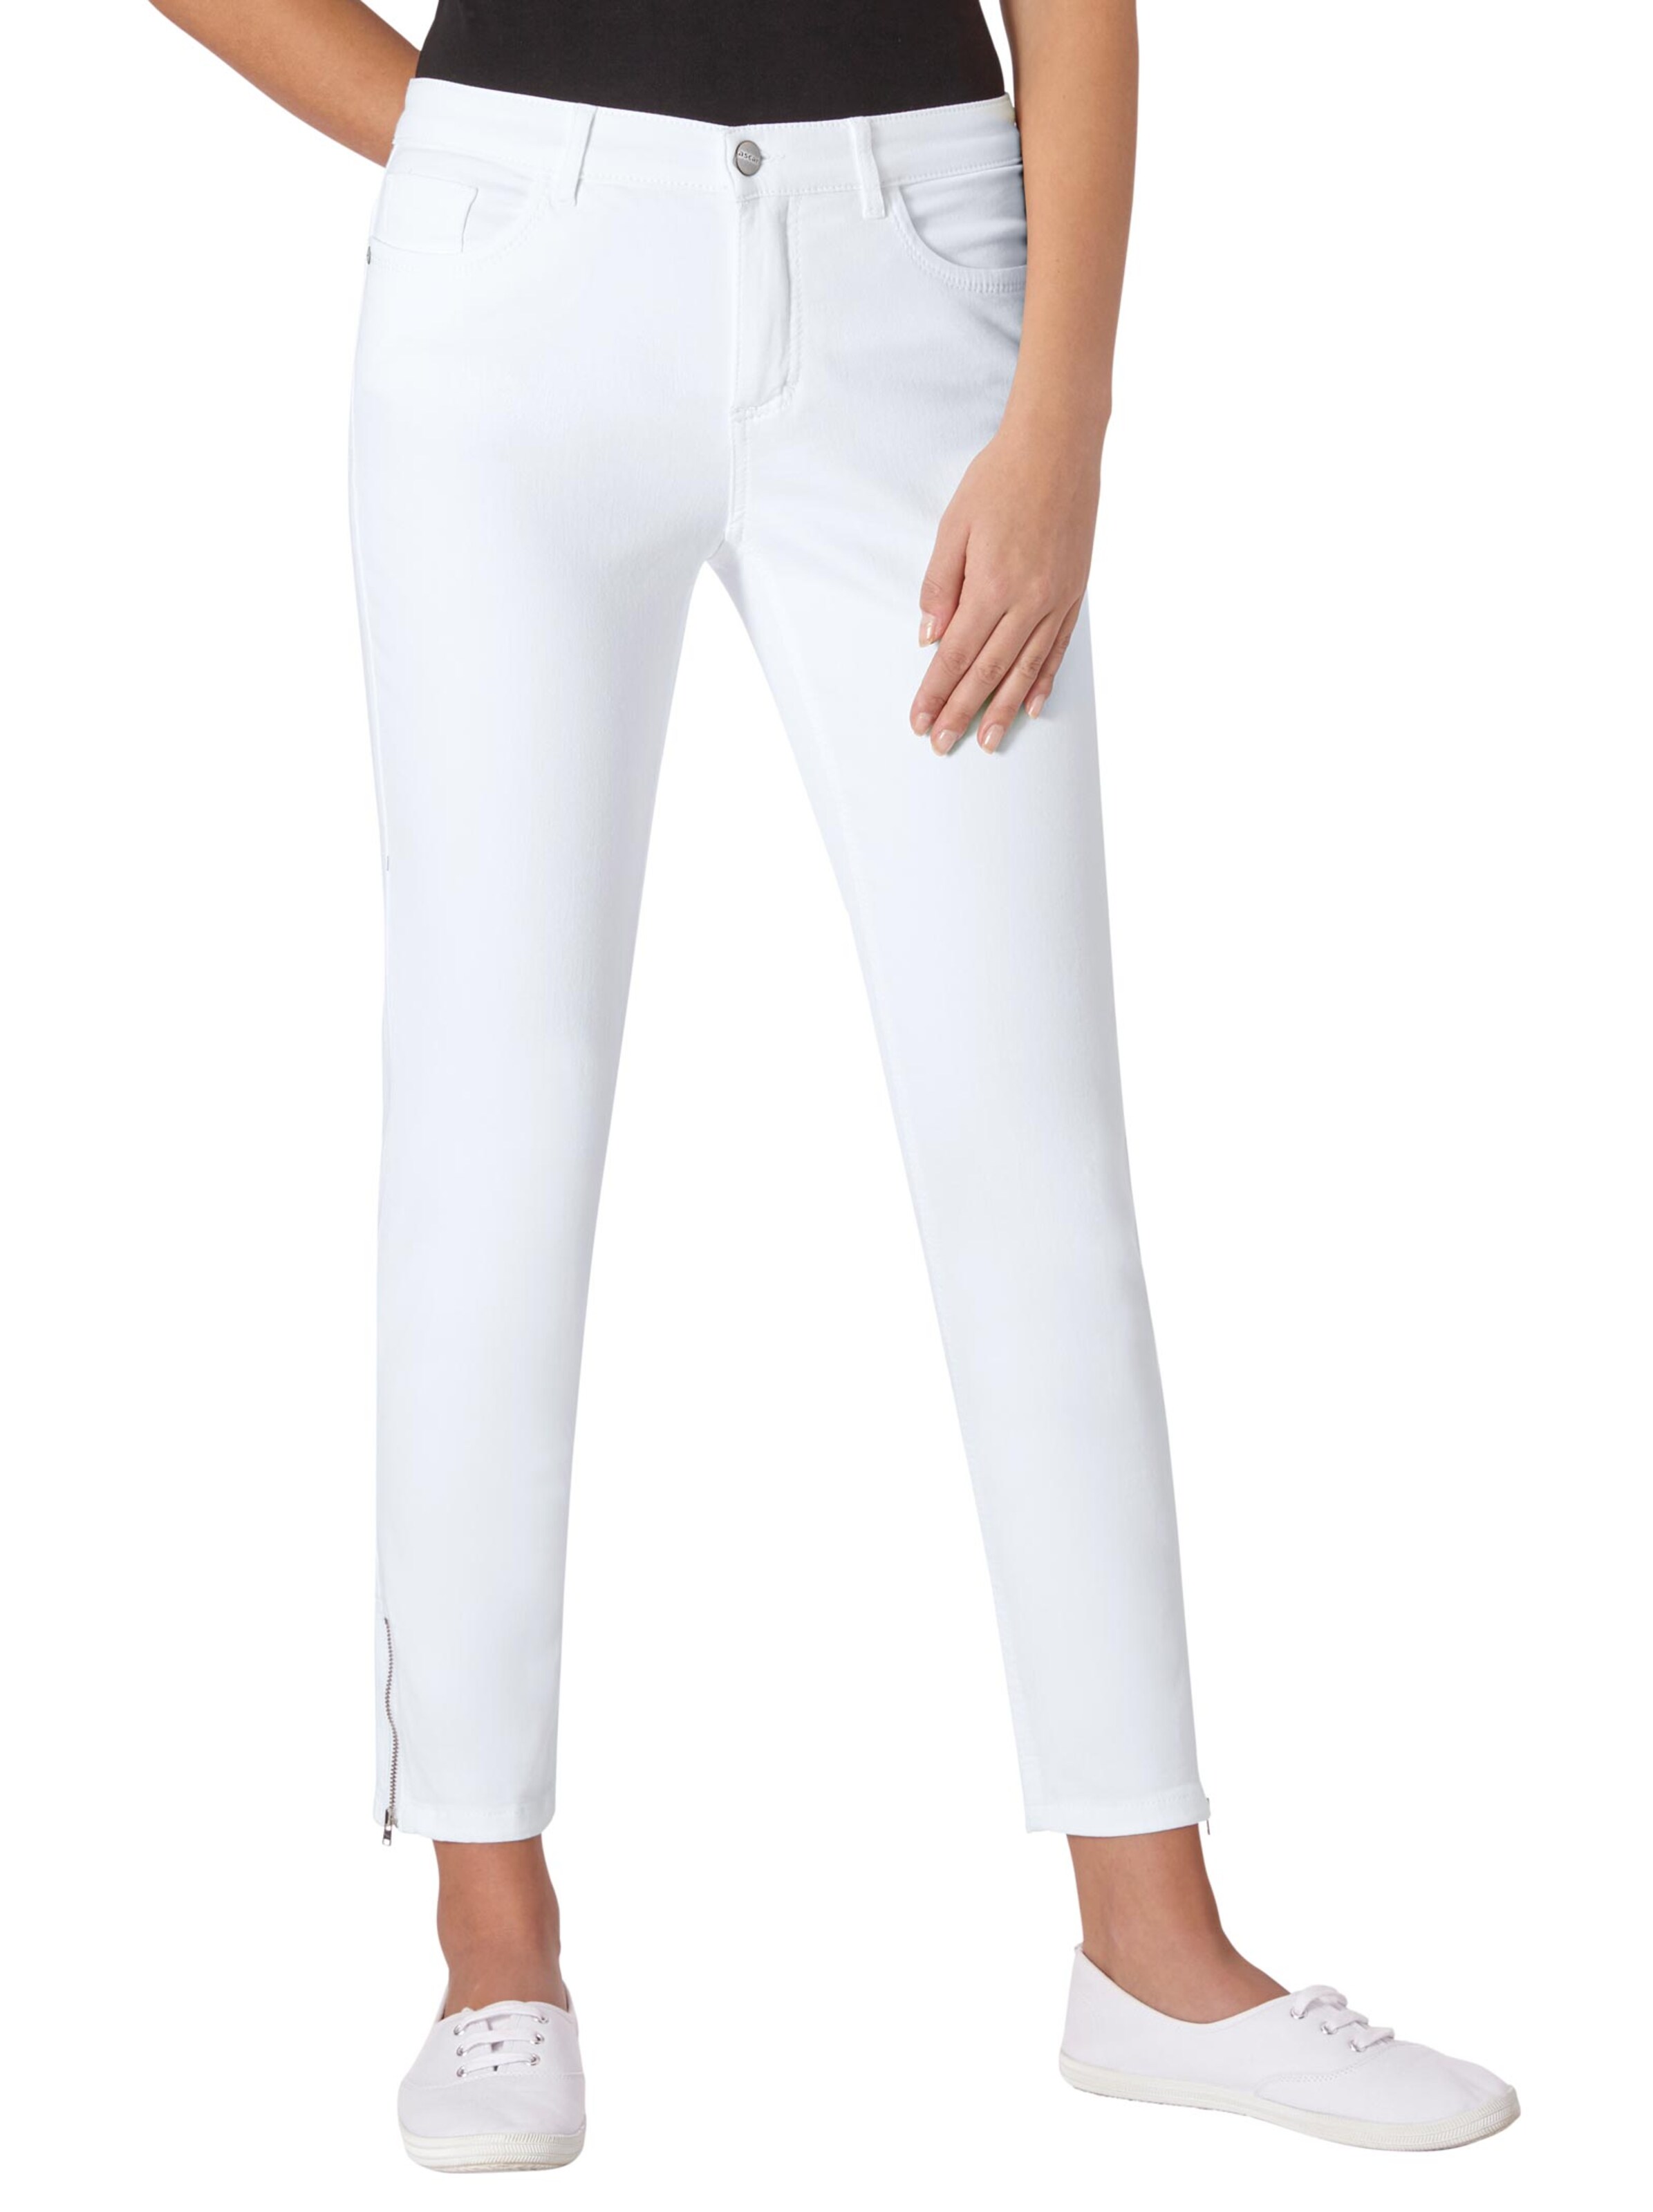 Damenmode Jeans Ascari Stretch-Jeans in weiß 